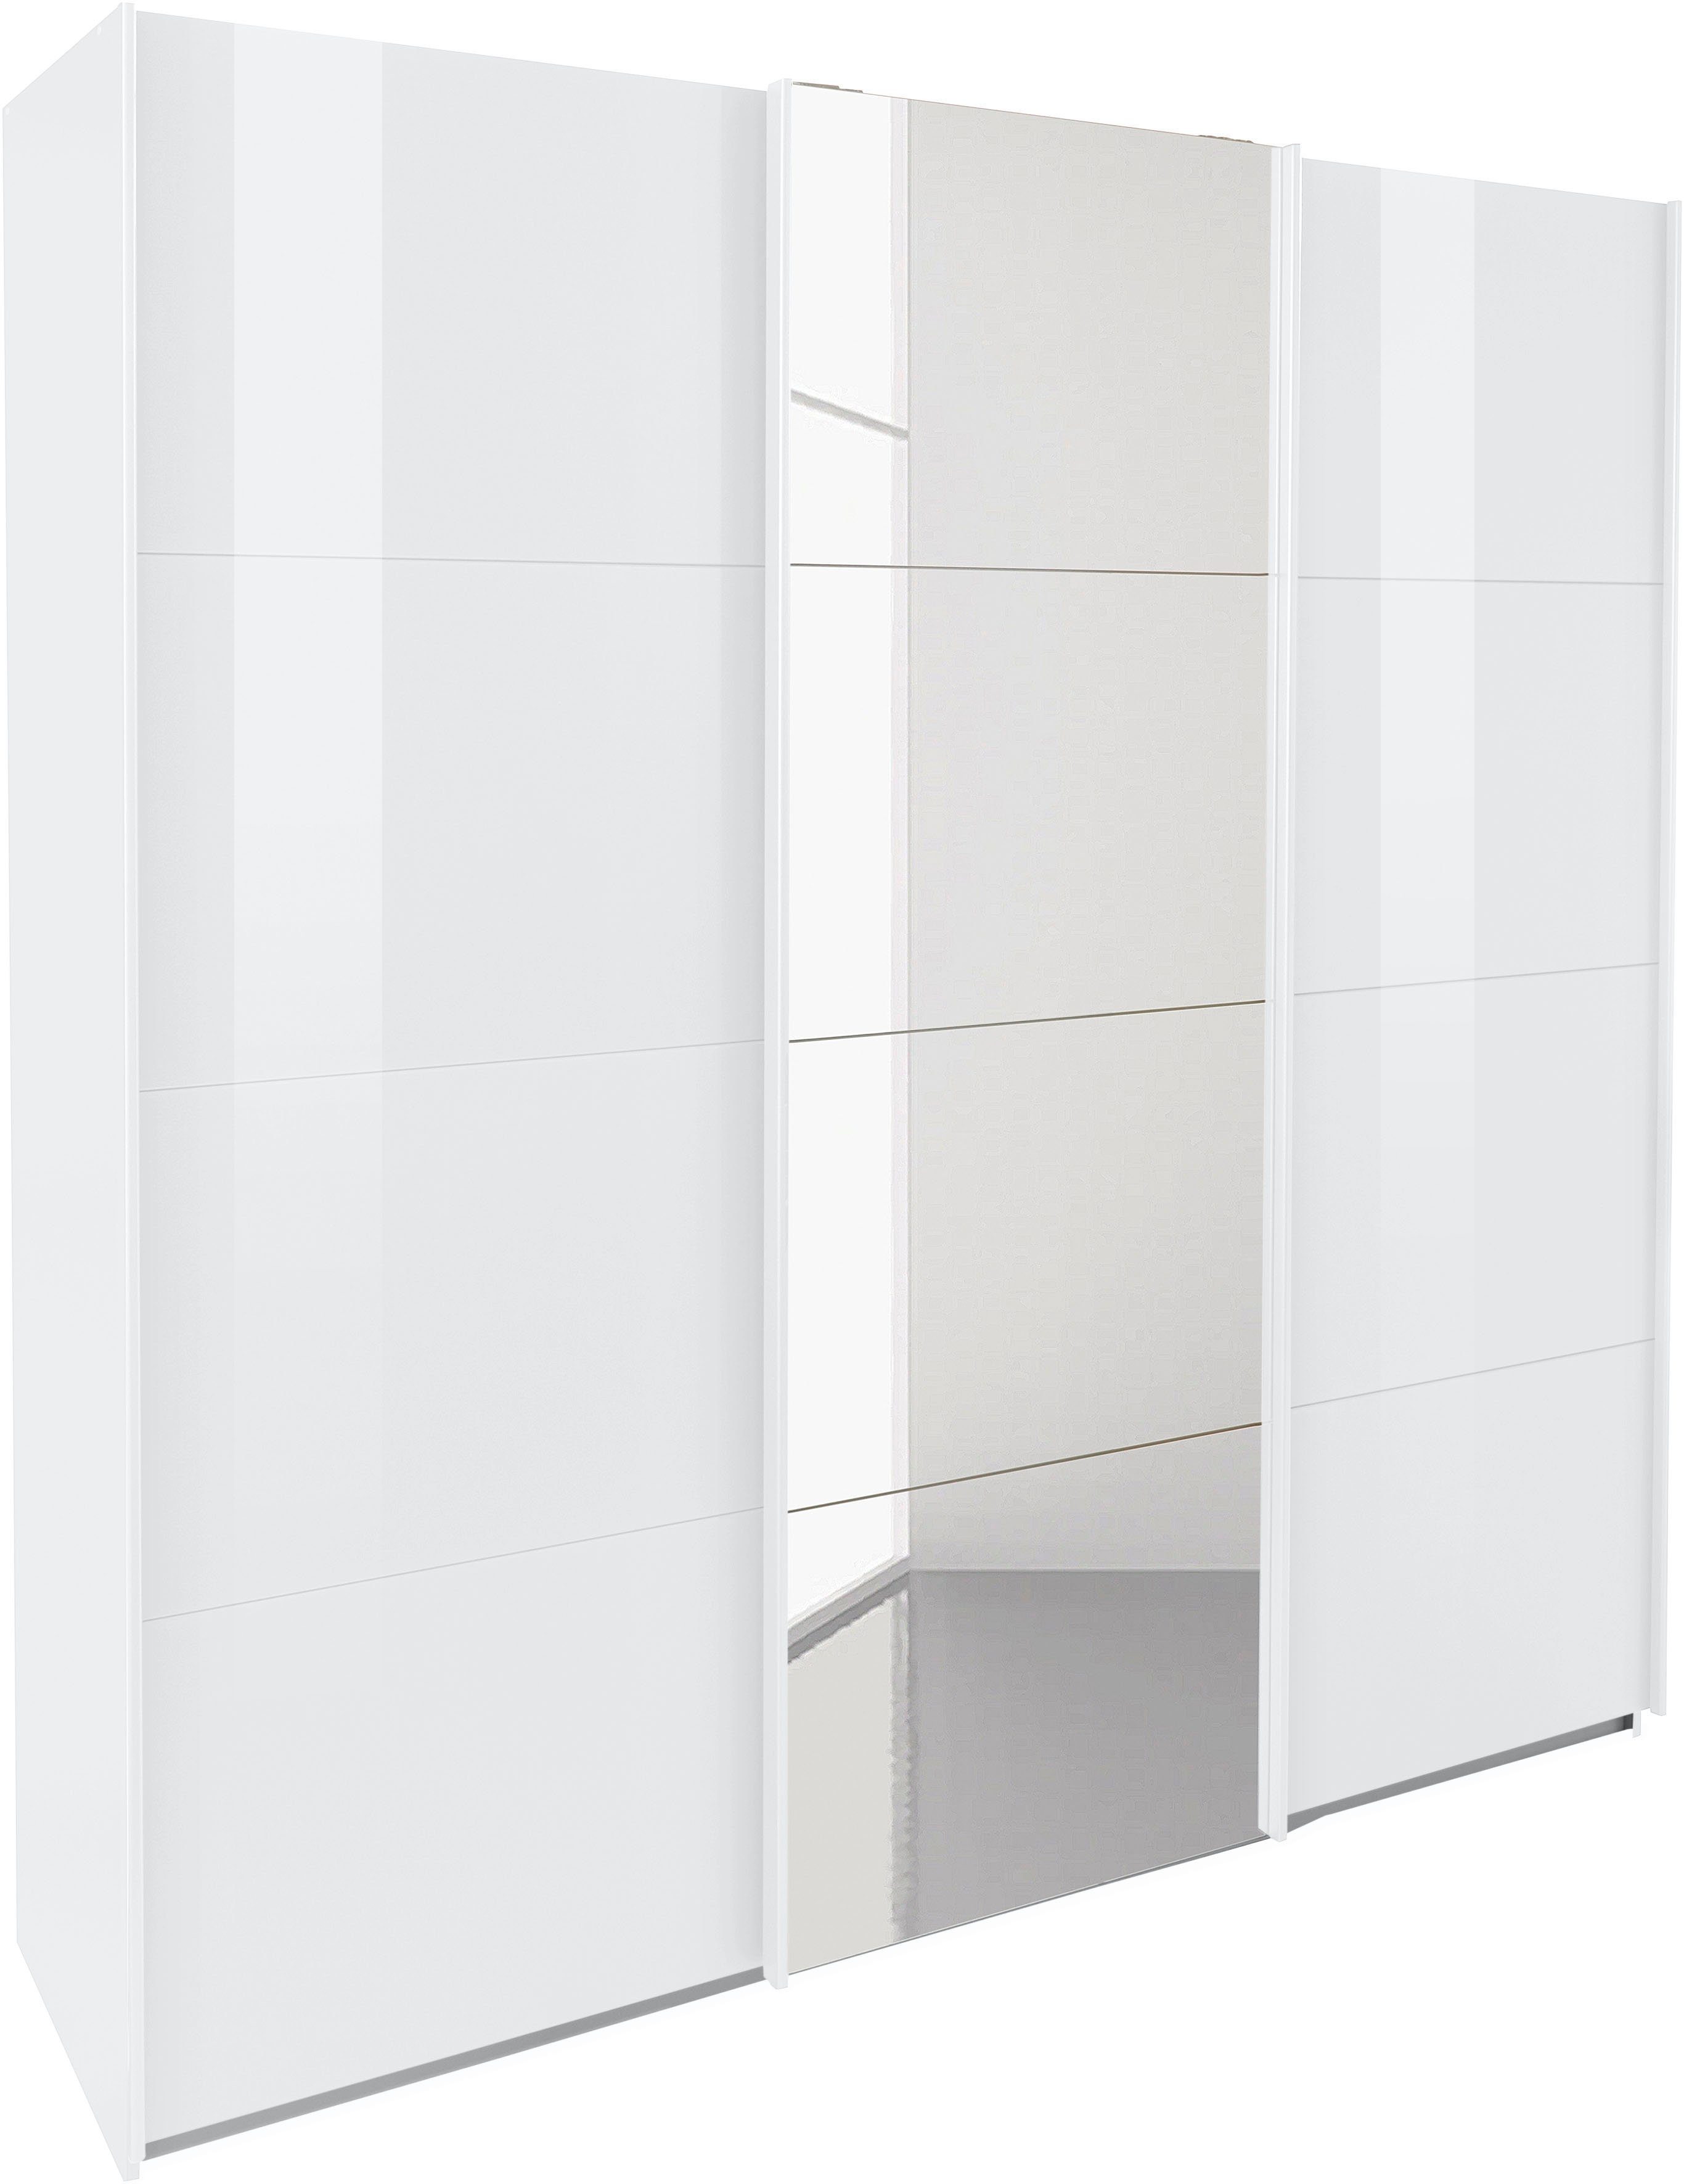 Weiß/Hochglanz Wäscheeinteilung Schwebetürenschrank Oteli Innenschubladen sowie rauch mit Böden inkl. zusätzlichen 3 Weiß